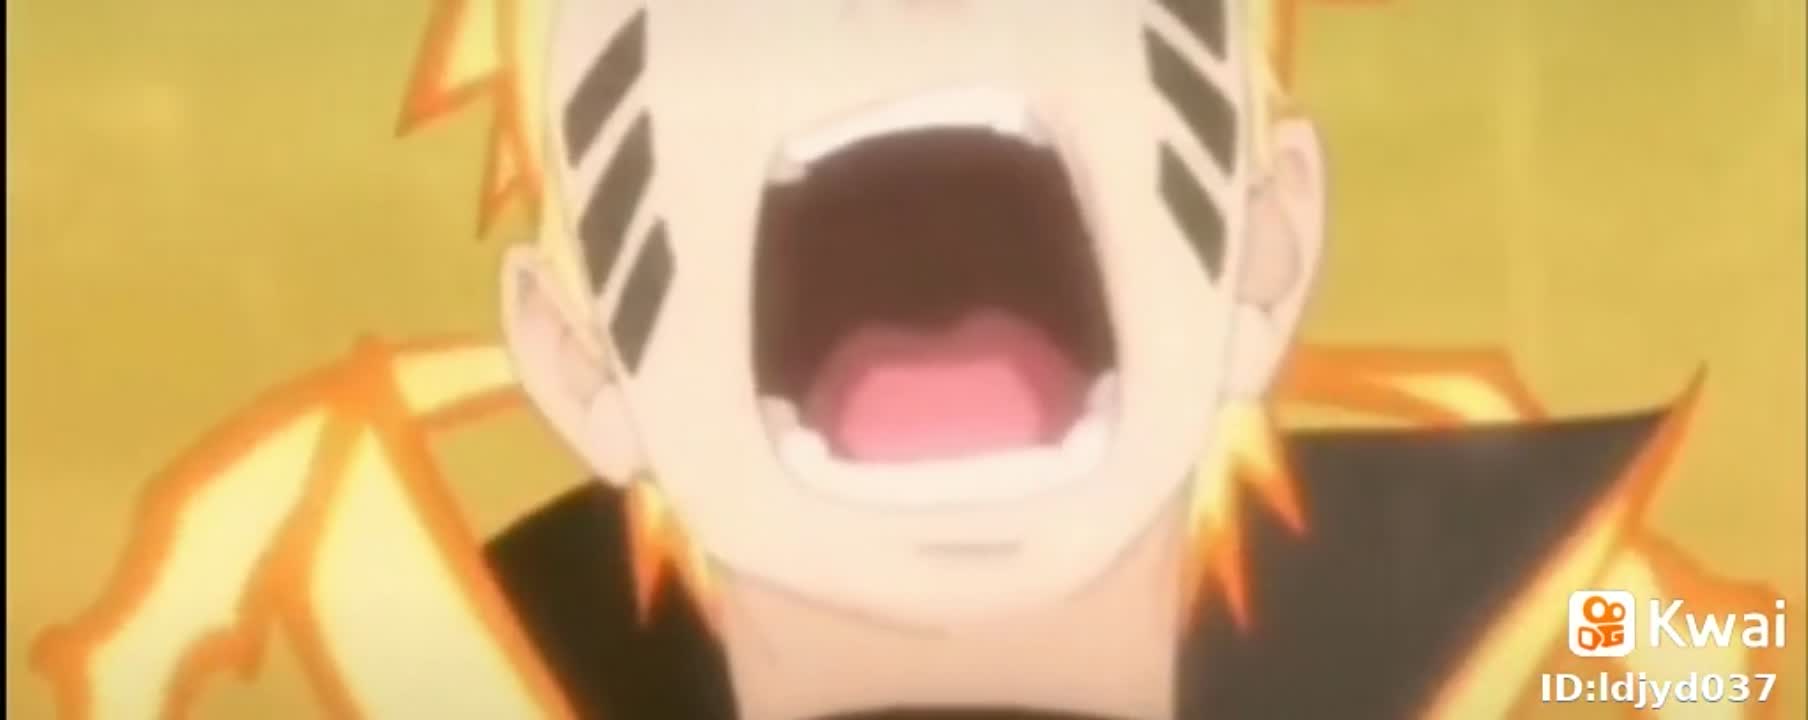 sasuke chiquito uwu  Sasuke sakura, Naruto y sasuke, Anime estético